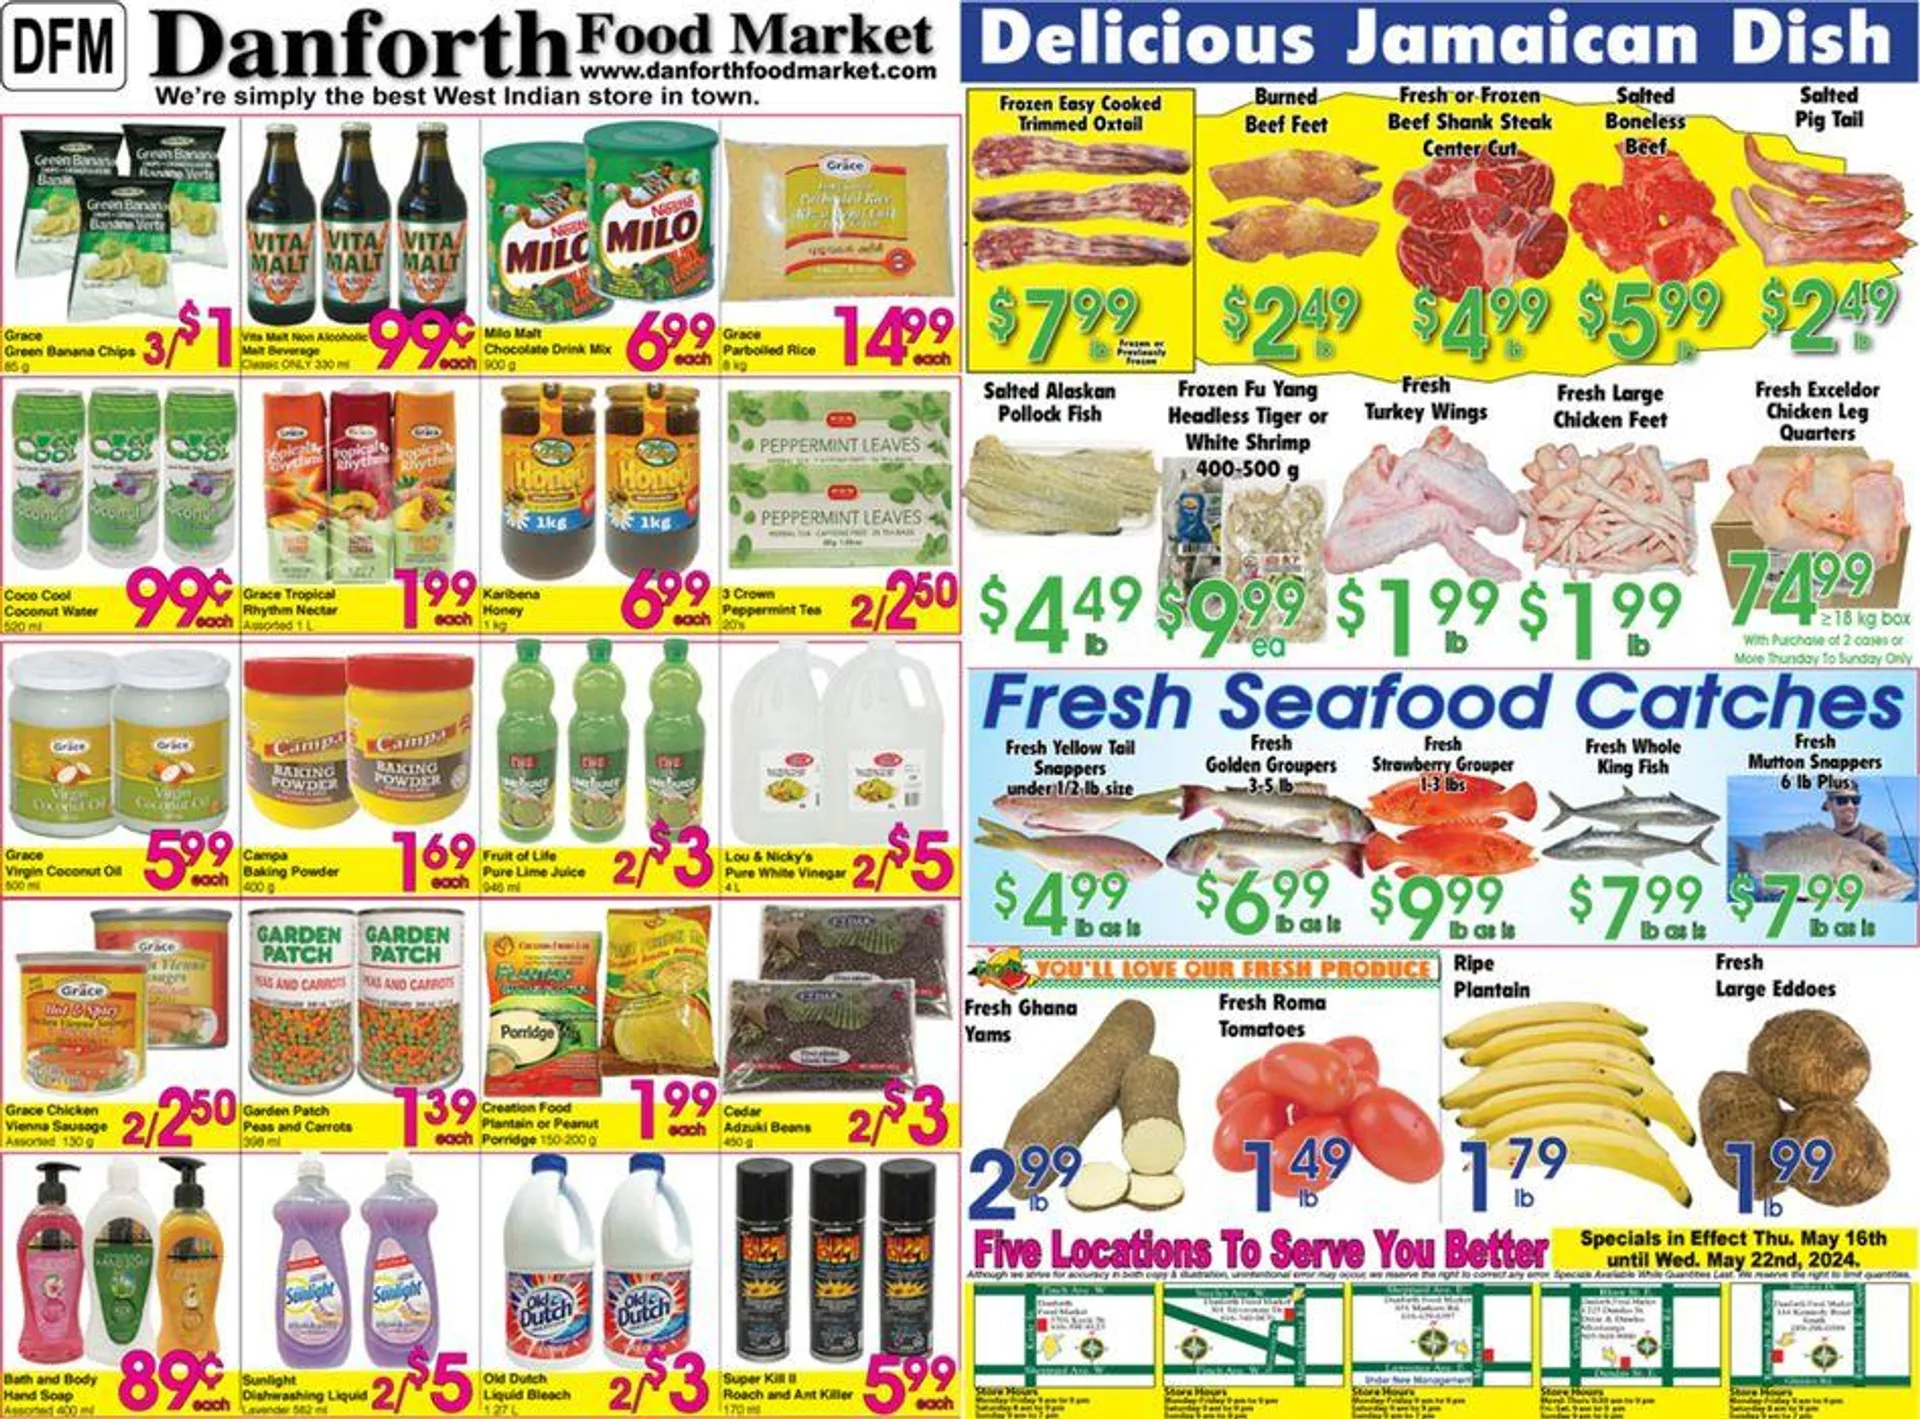 Danforth Food Market - 1